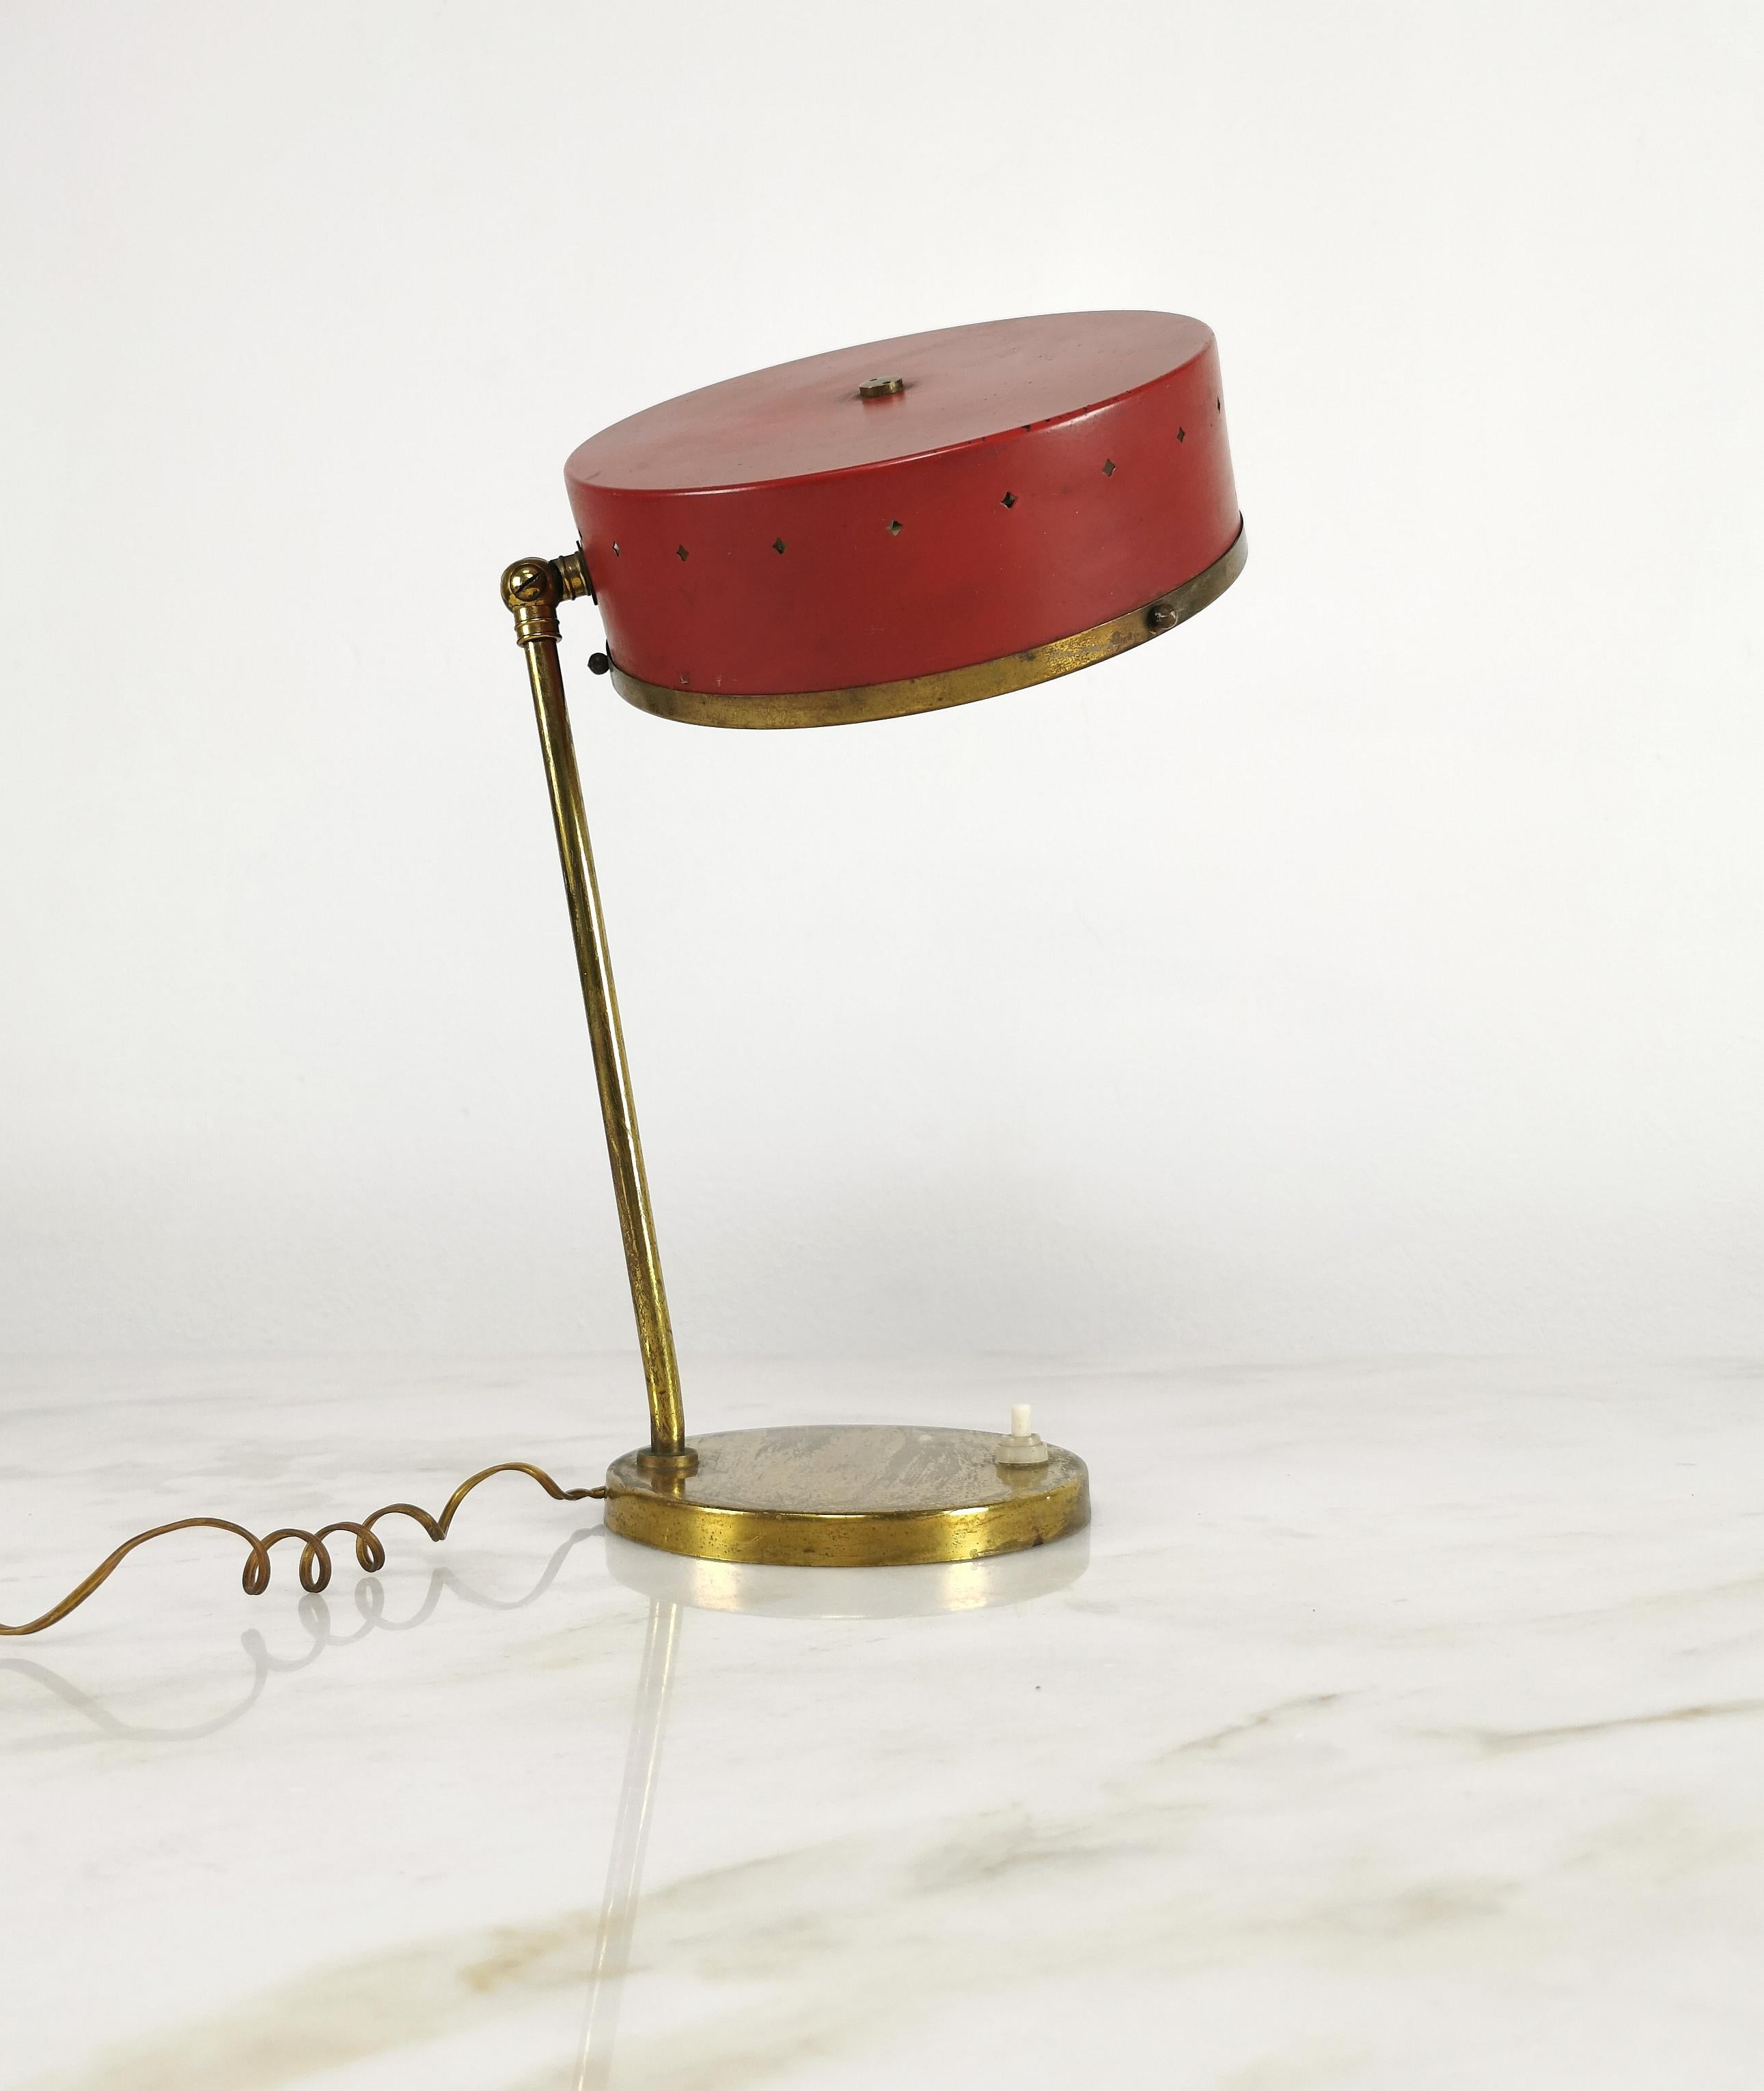 Lampe de table avec 1 lumière E27 produite en Italie dans les années 1950, attribuée à Stilnovo. La lampe a été fabriquée avec une base circulaire en laiton où s'élèvent une tige et un joint en laiton, ce qui permet d'orienter le diffuseur en métal